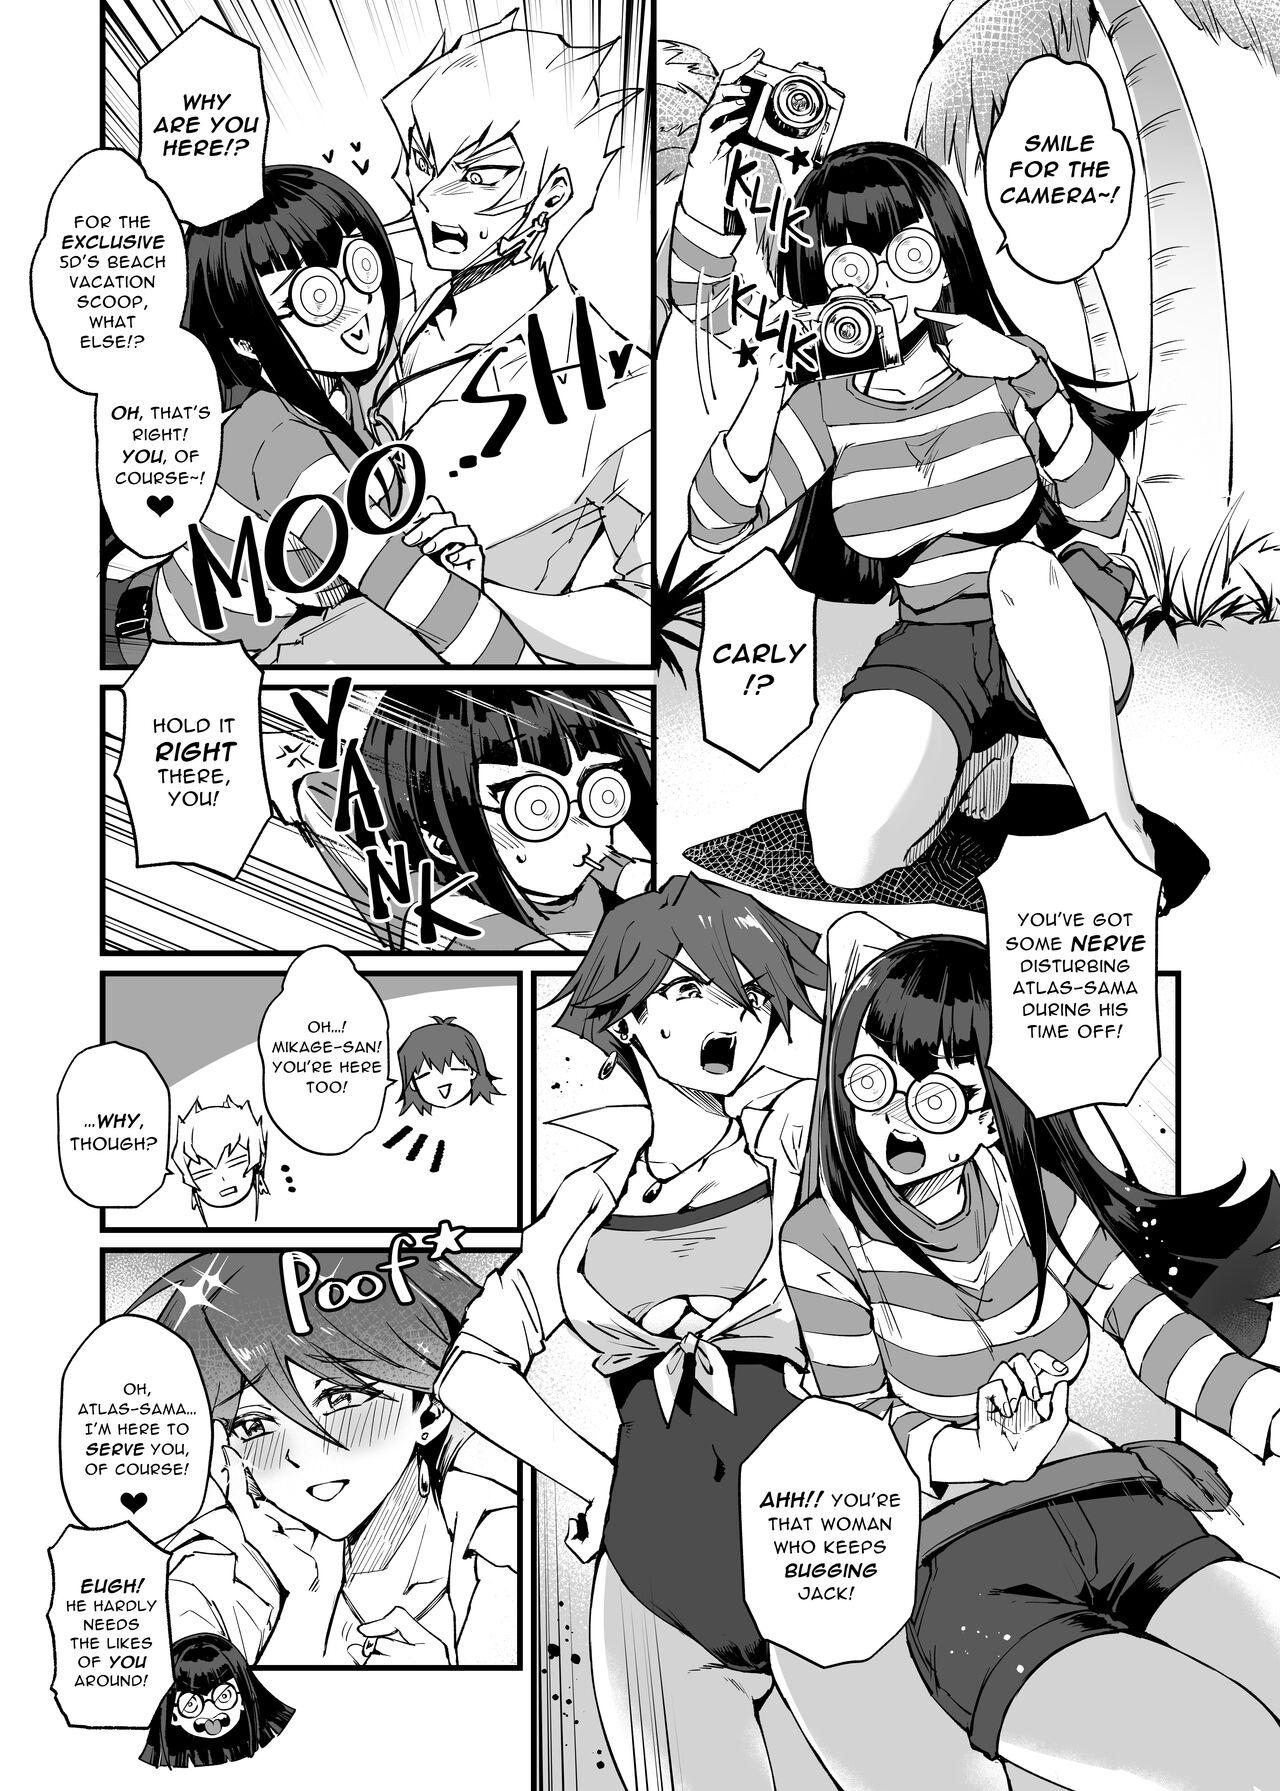 Fuck Samakani - Yu-gi-oh 5ds Gay Big Cock - Page 4